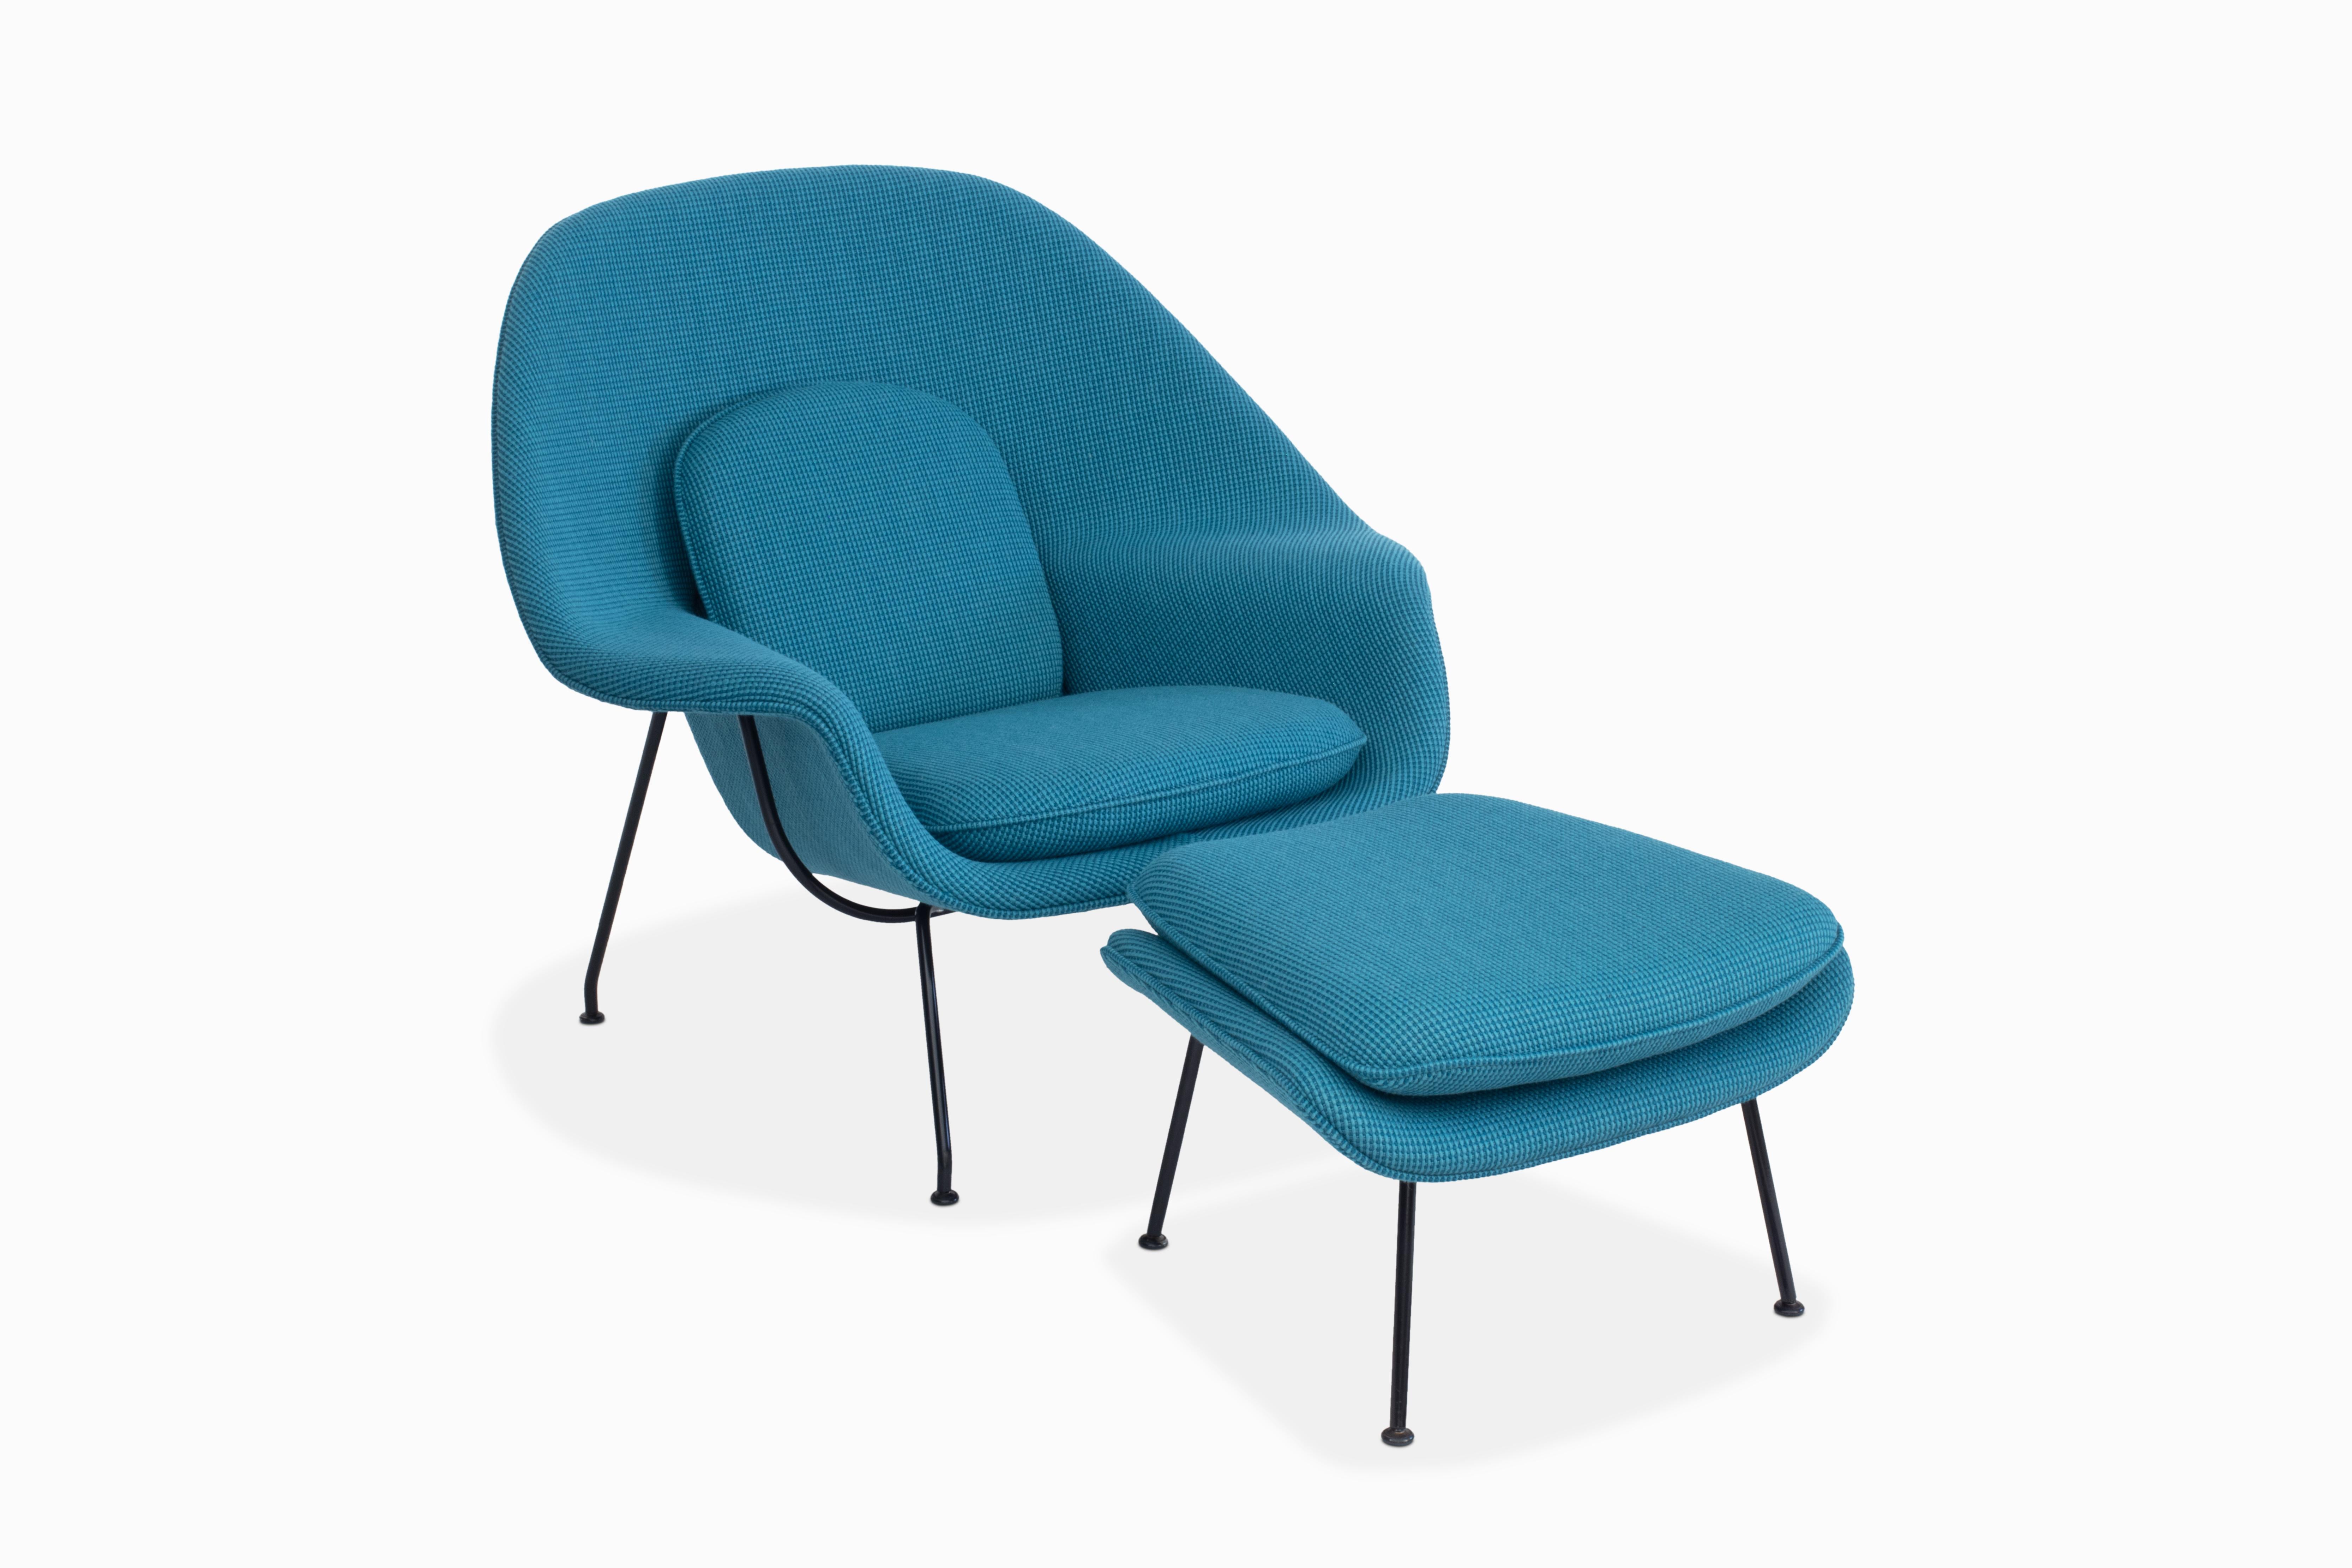 Voici une chaise et un ottoman Womb absolument remarquables, créés par Eero Saarinen pour Knoll. Cette chaise de salon emblématique a été habilement retapissée dans le tissu haut de gamme 